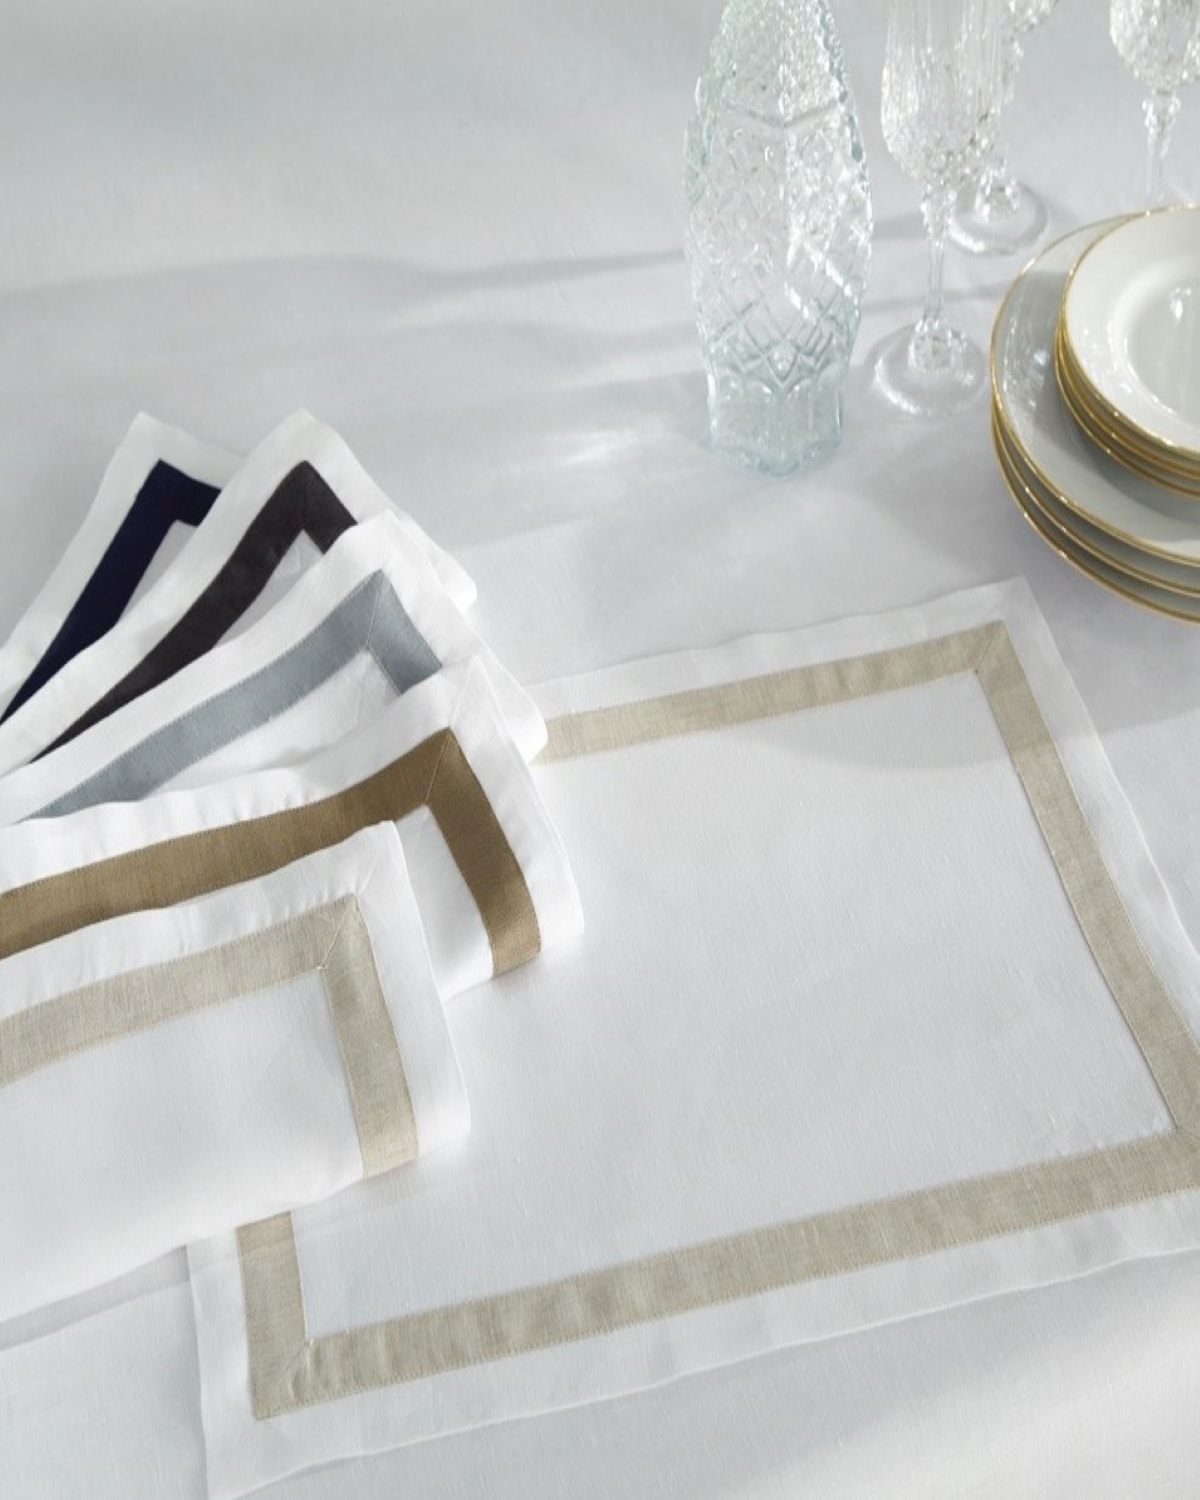 Eri Textiles Uni linen napkins, white, set of 6